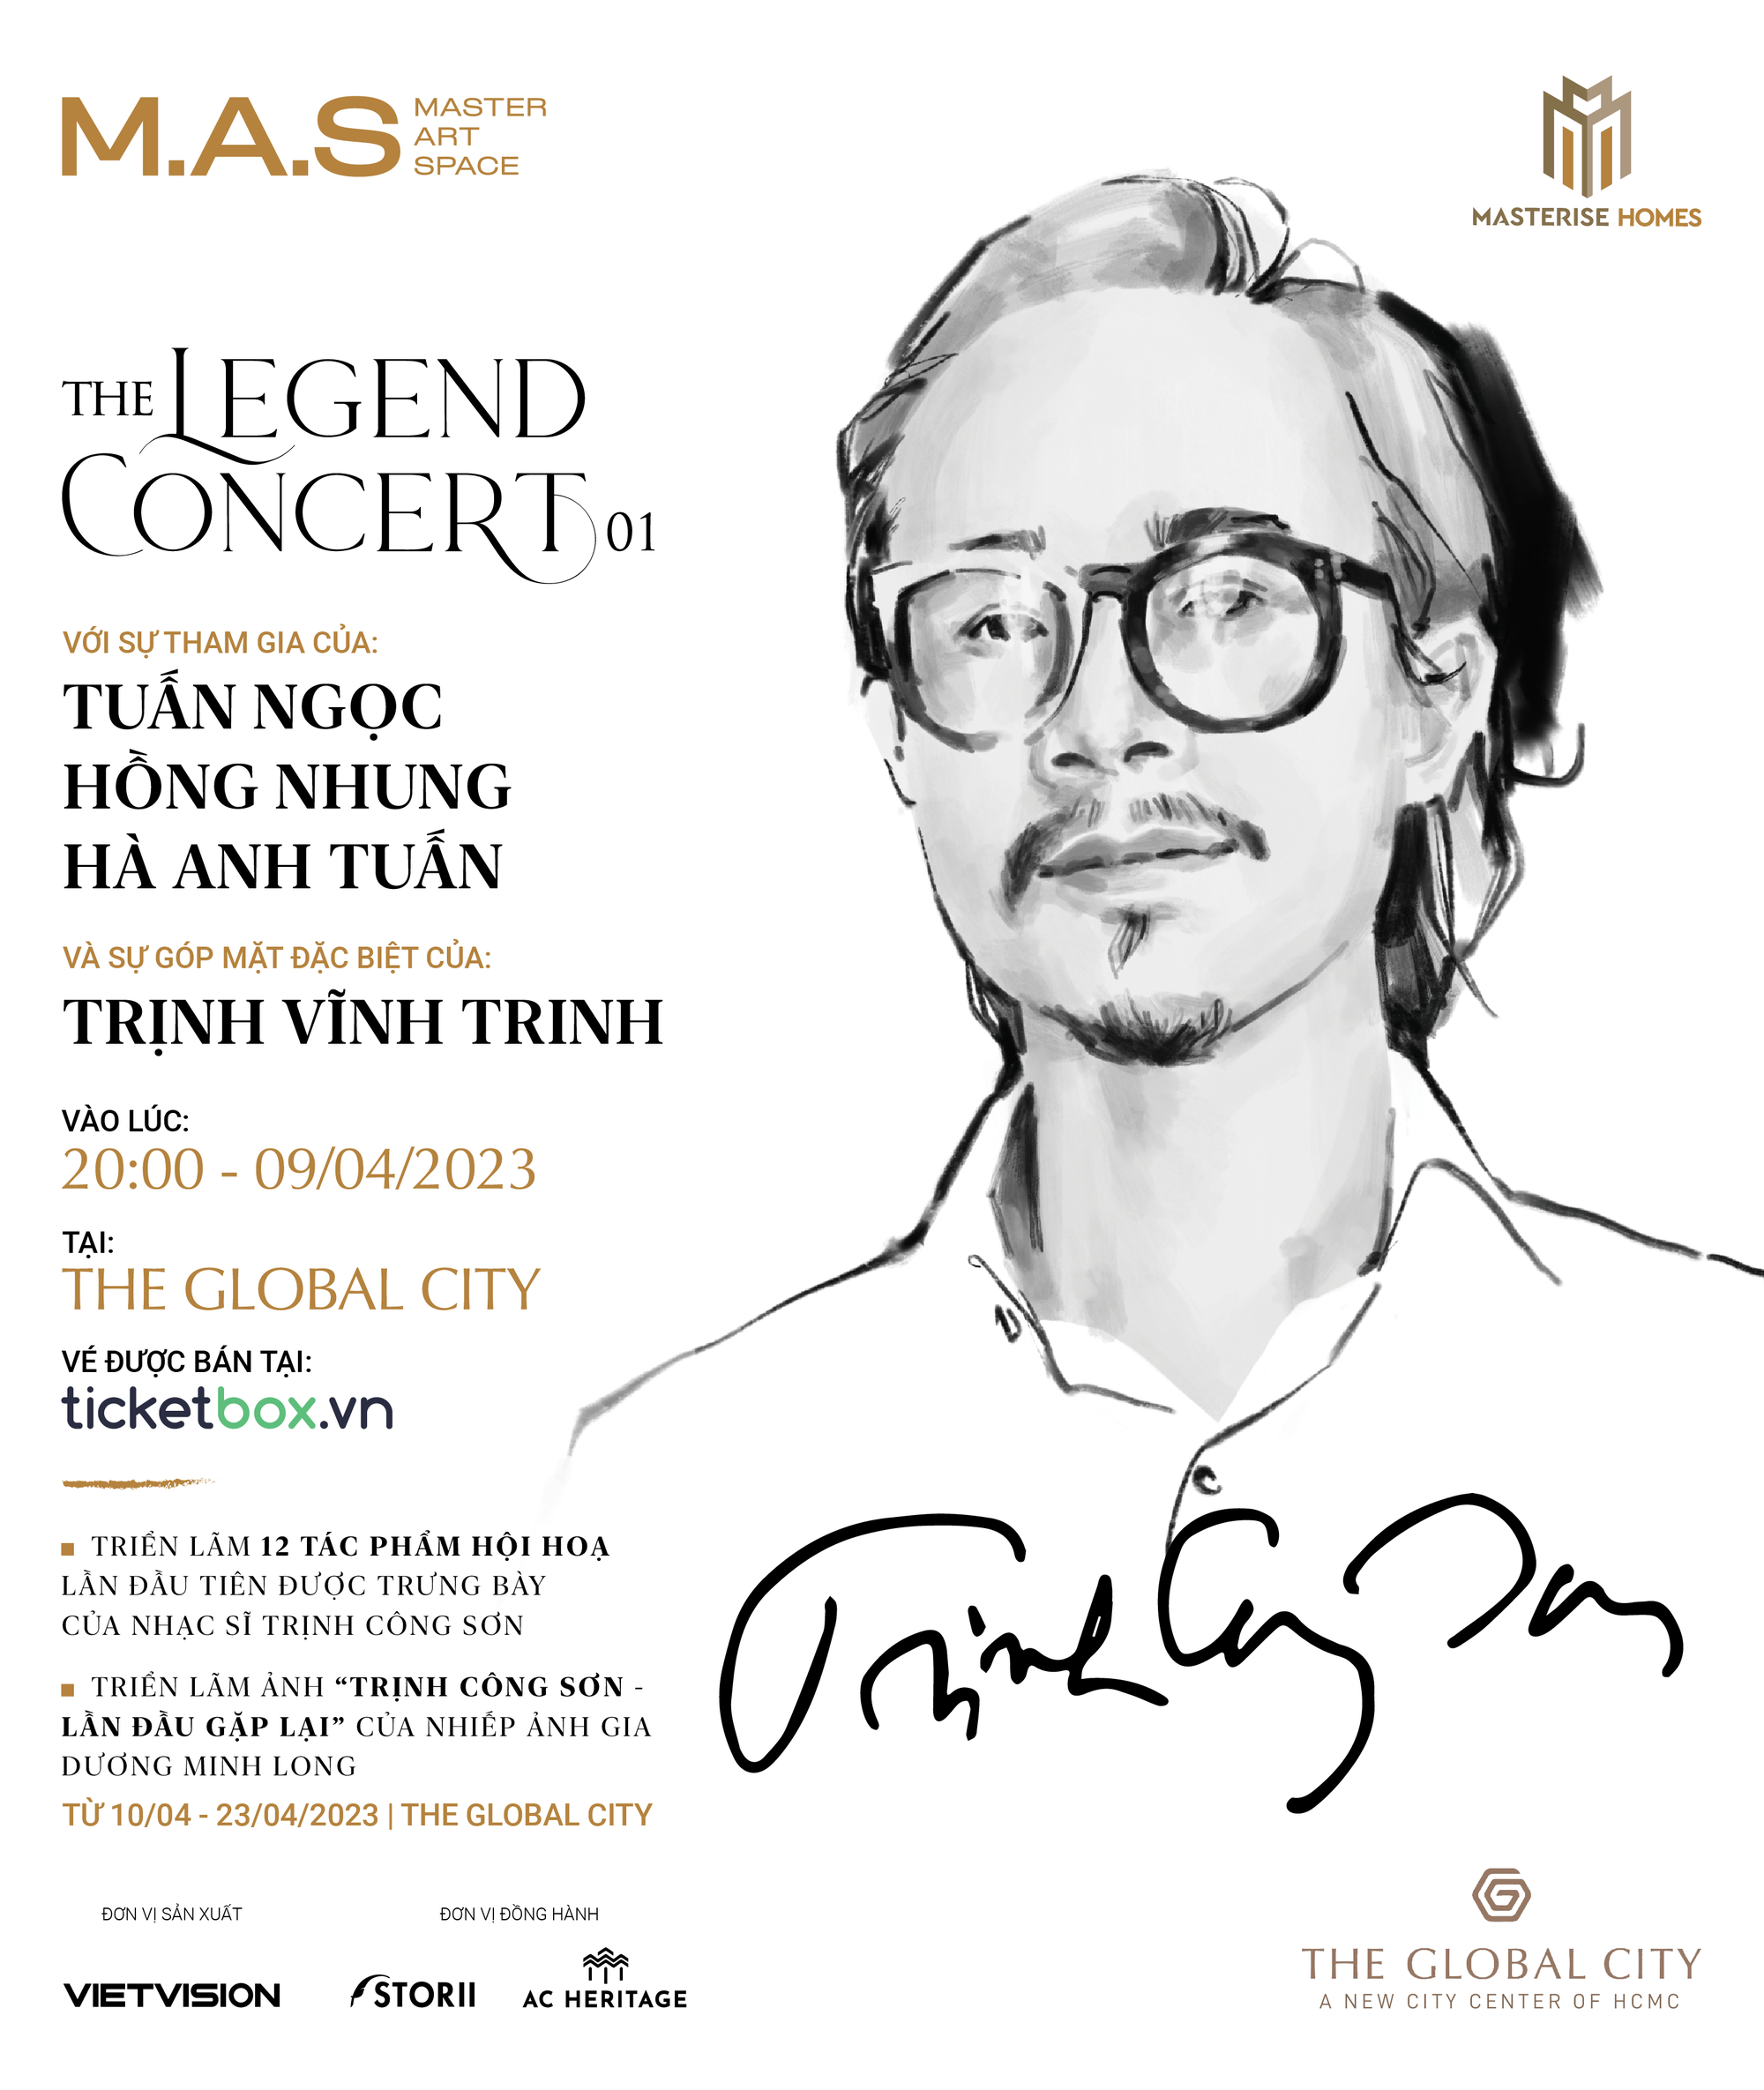 Đêm nhạc The Legend Concert – Trịnh Công Sơn diễn ra tại trung tâm mới The Global City - Ảnh 1.